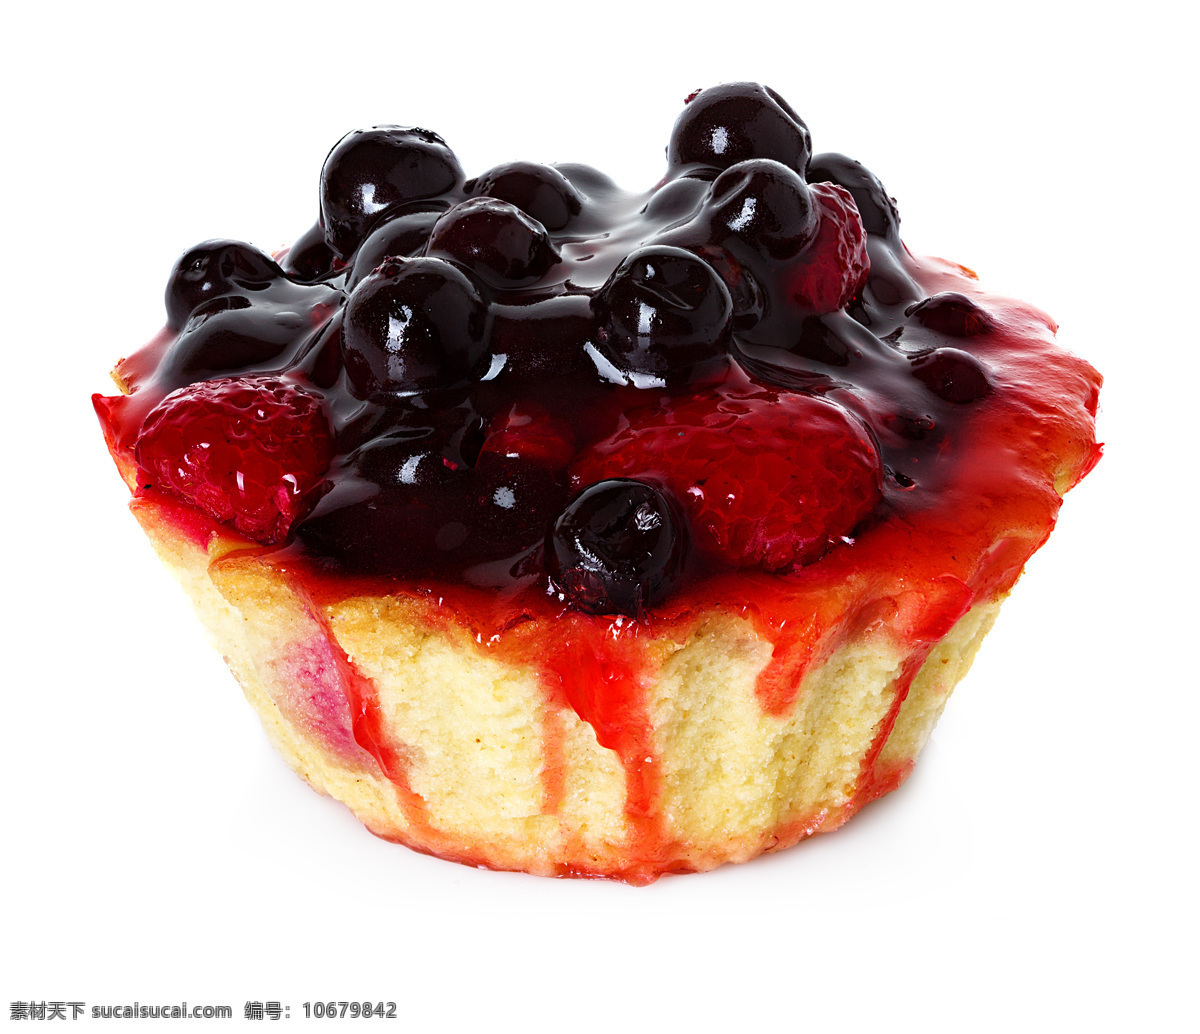 水果 蓝莓 蛋糕 草莓 甜食 生日蛋糕图片 餐饮美食